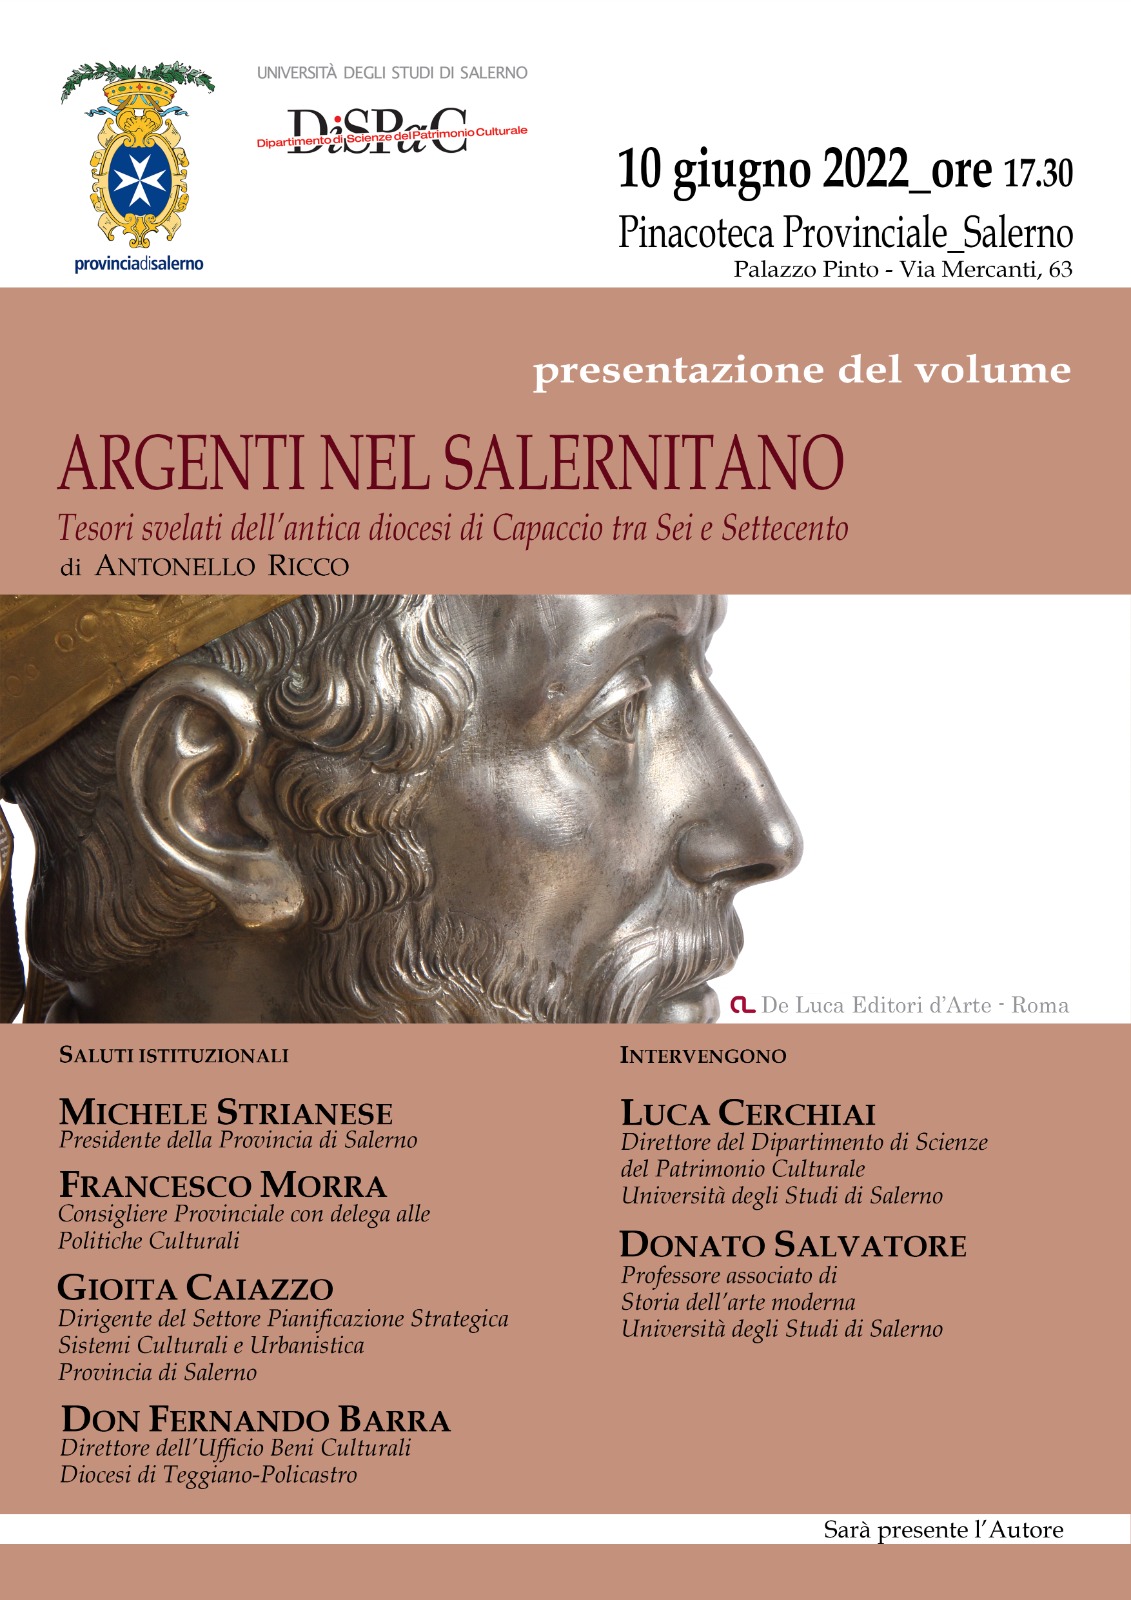 Salerno: a Pinacoteca volume di Antonello Ricco “Argenti nel Salernitano”